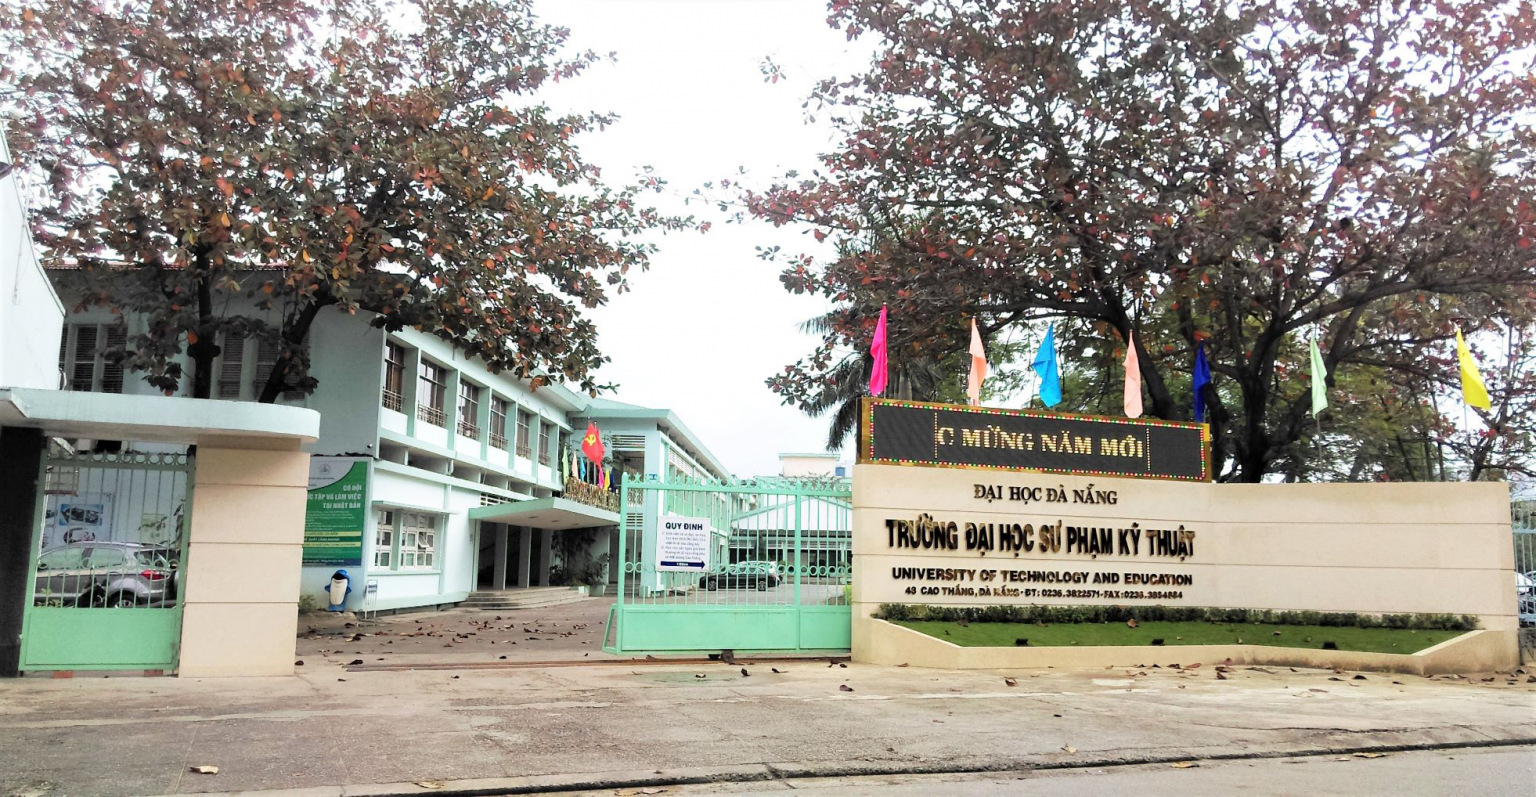 Trường Đại học Sư phạm Kỹ thuật Đà Nẵng